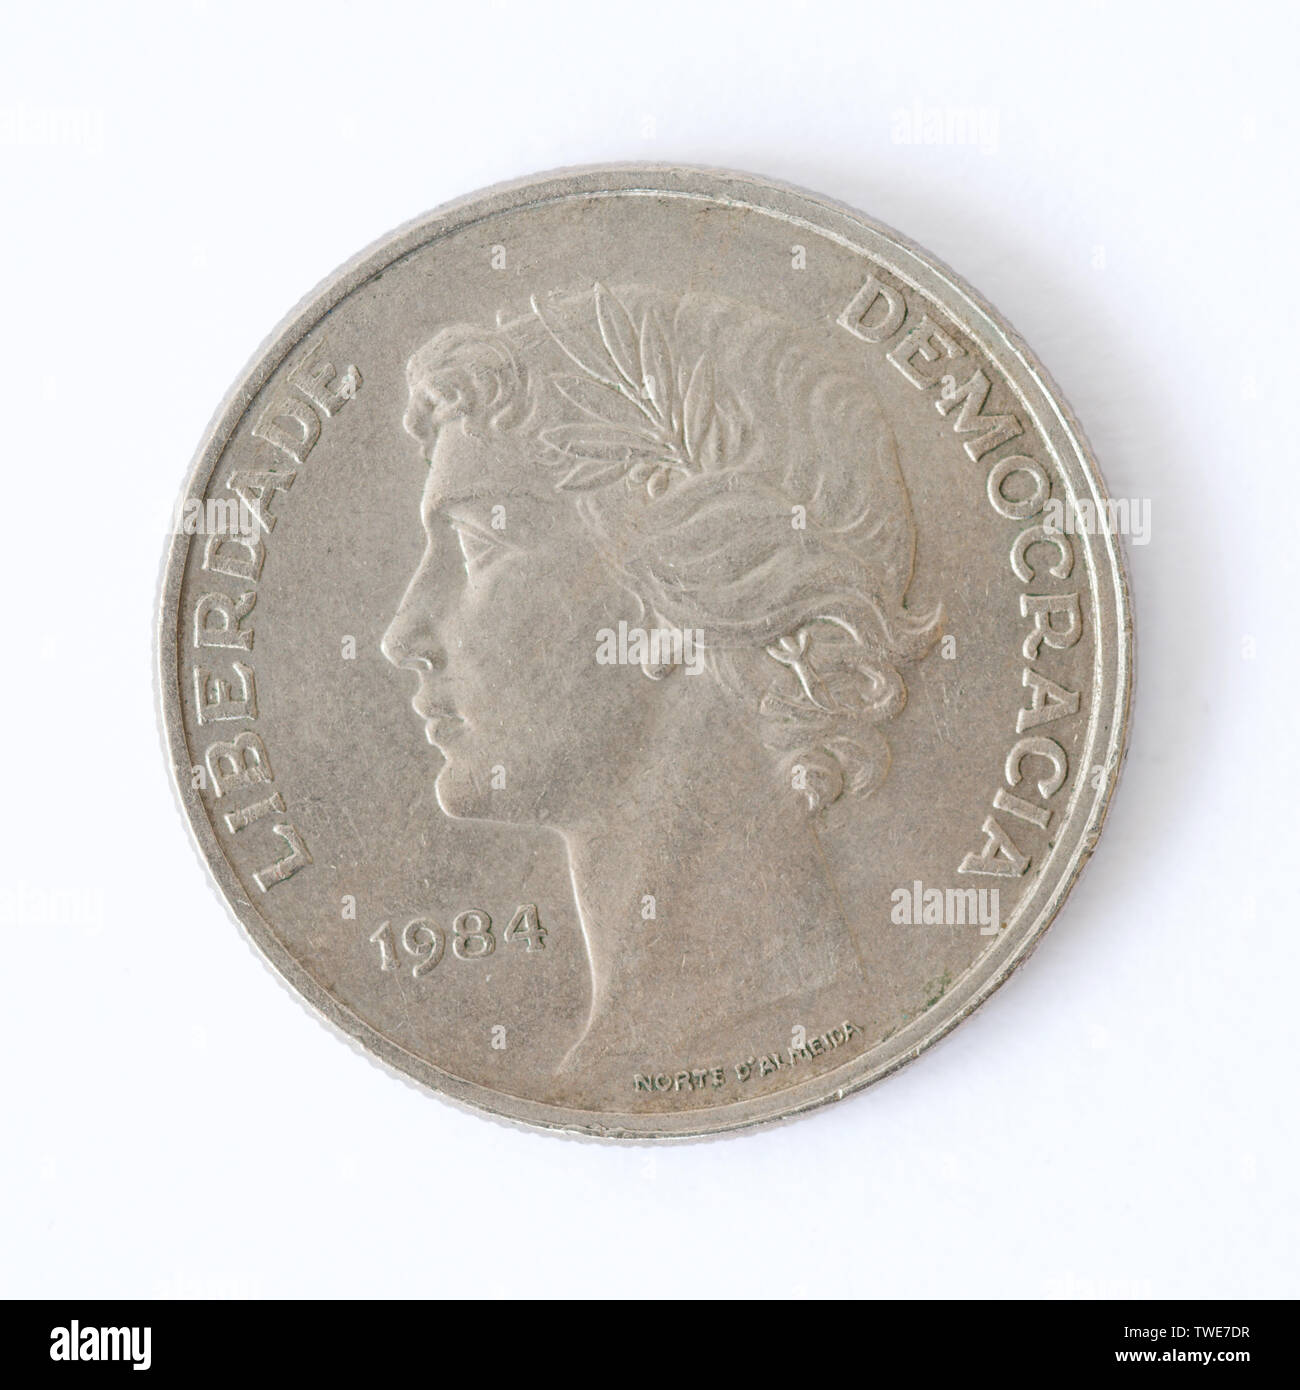 Portugal 25 Escudos Coin - 1984 Stock Photo